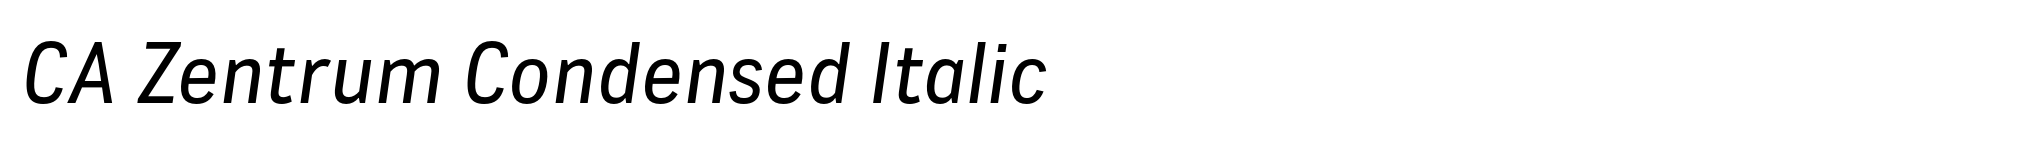 CA Zentrum Condensed Italic image